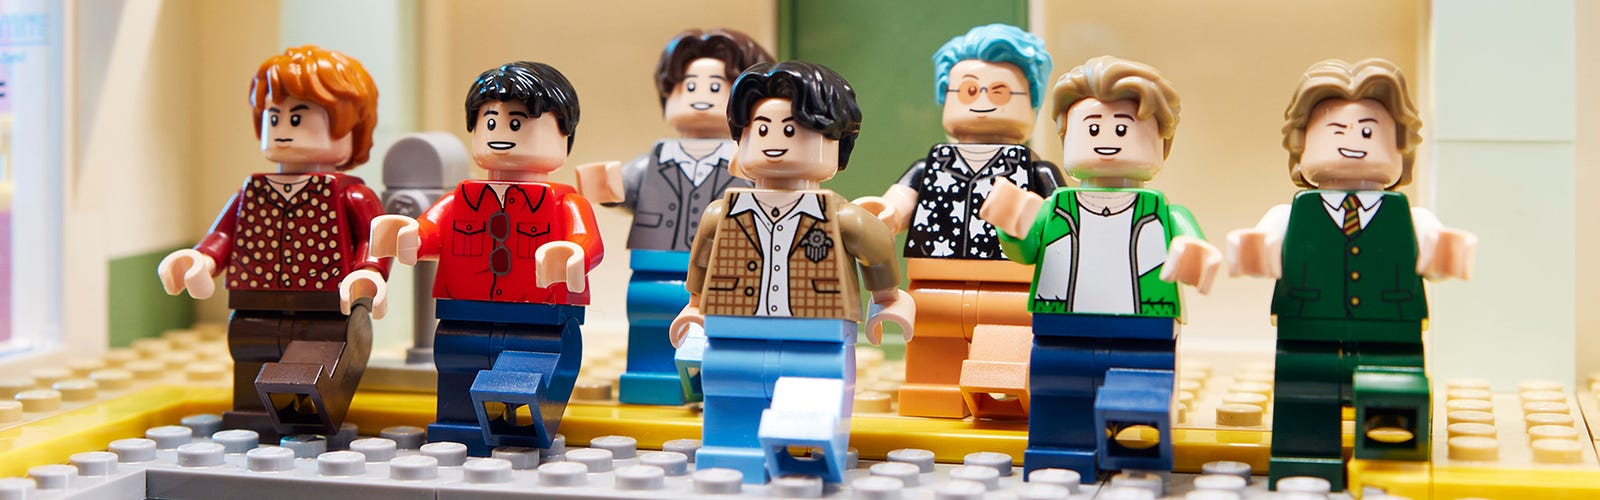 LEGO lanza plataforma para diseñar y comprar tu propia minifigura